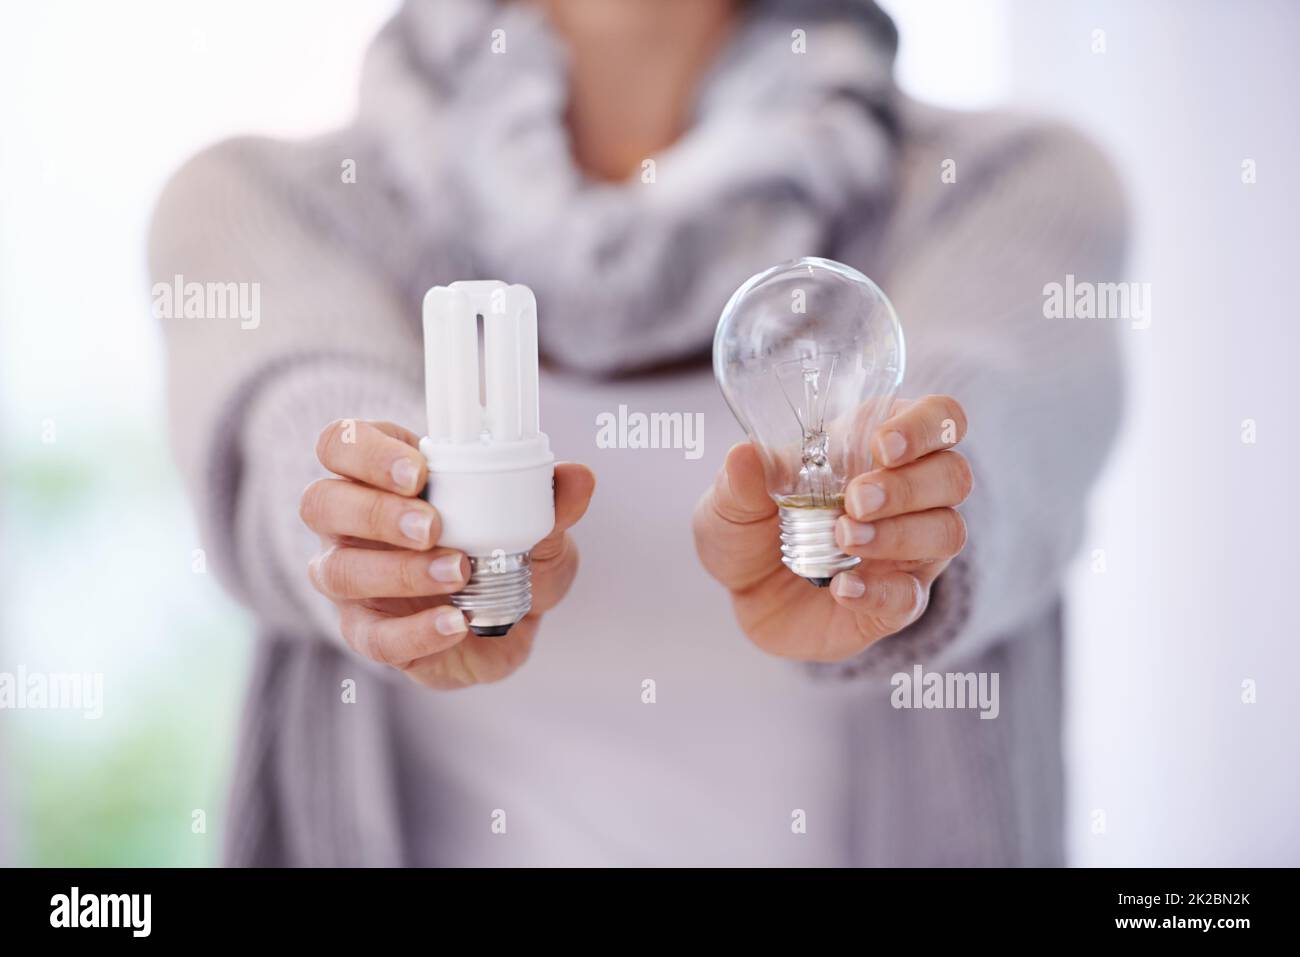 Halten Sie die Lichter länger brennen. Ein zugeschnittenes Bild einer Frau mit zwei verschiedenen Glühbirnen. Stockfoto